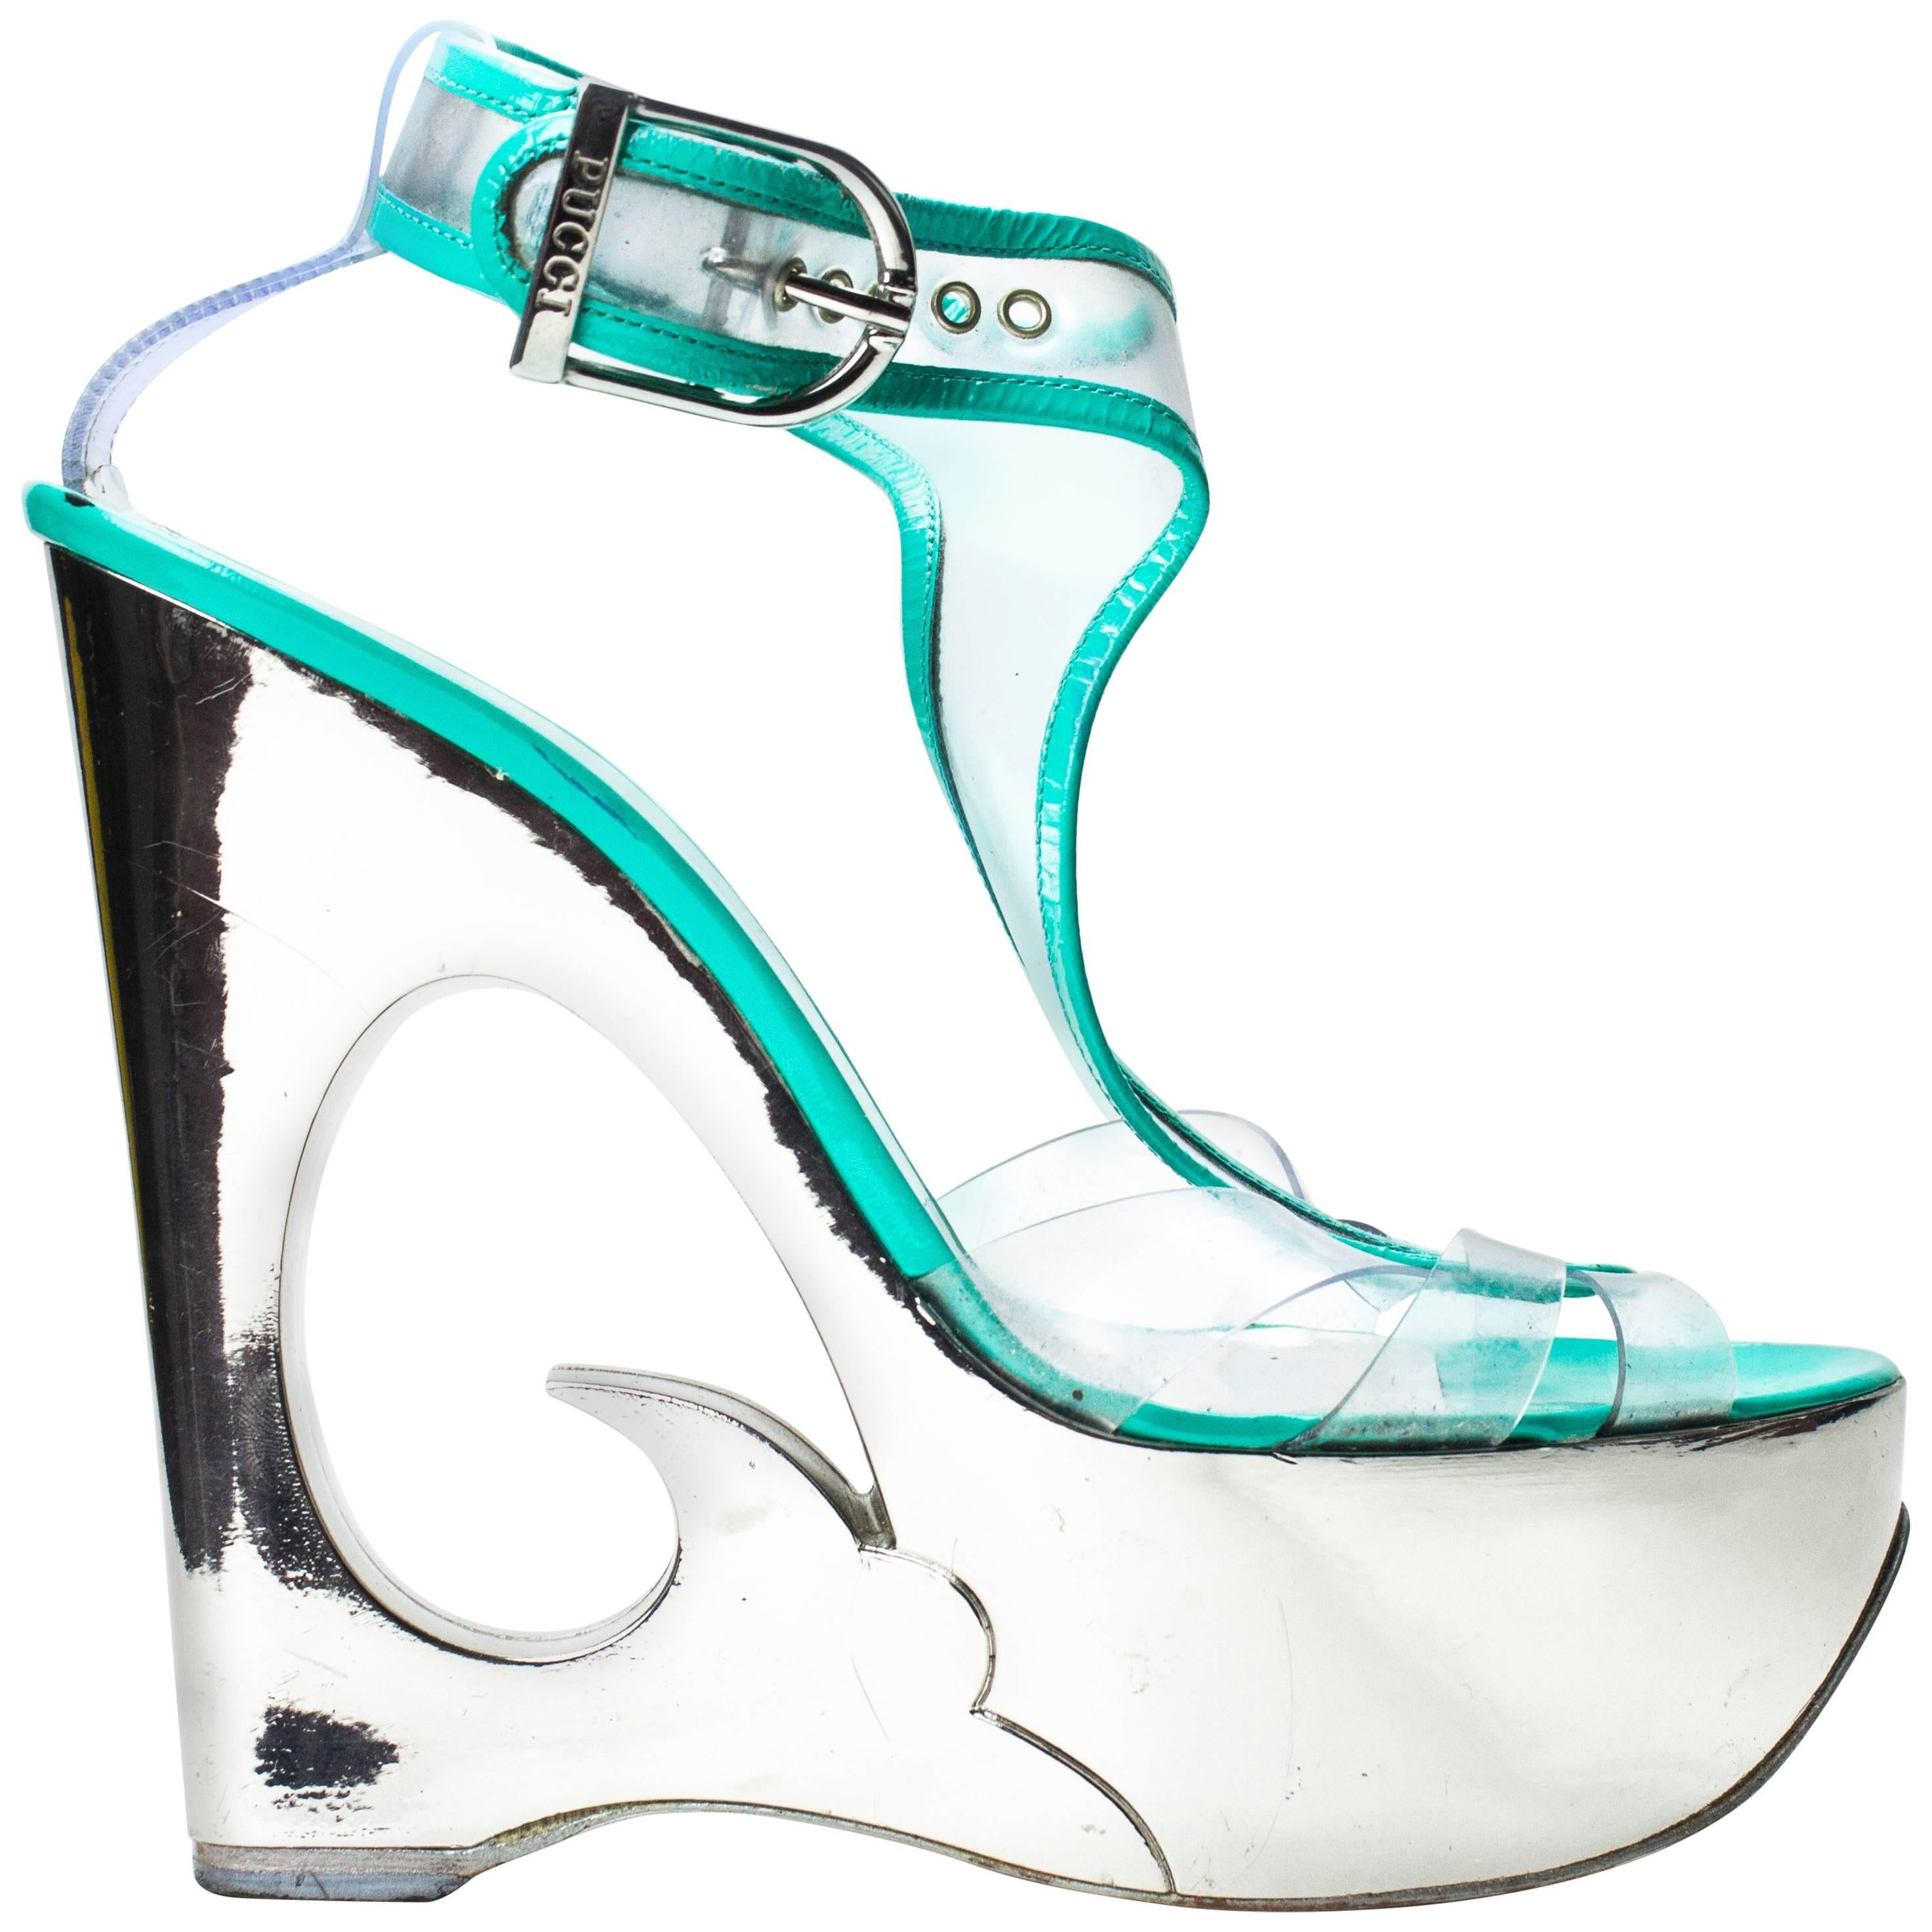 Cheap Catwalk Artifact Model High Heels with Sexy Waterproof Platform 15cm  Sandals Female Summer LFD-8661-A23 | Joom